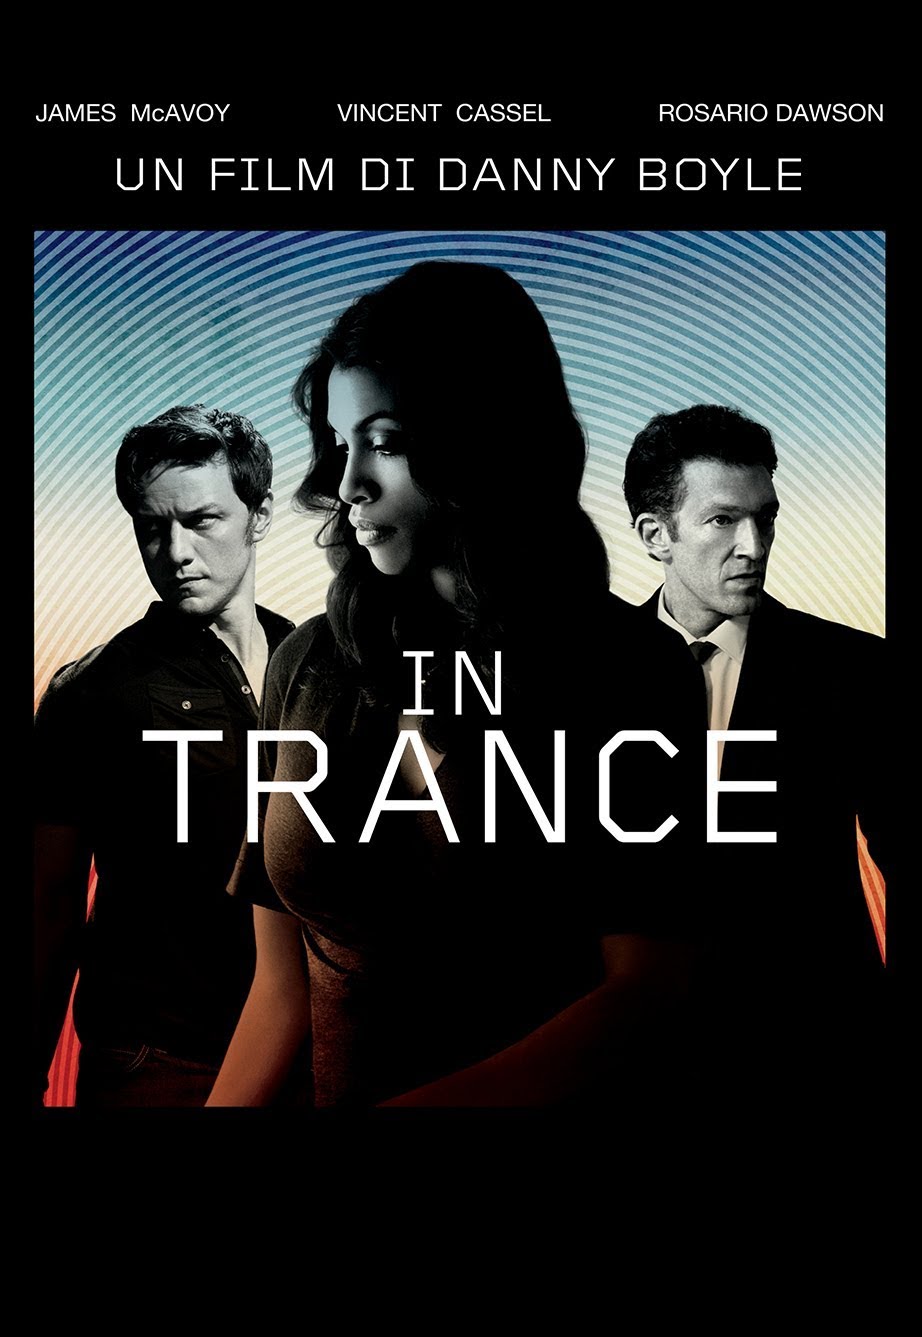 In Trance [HD] (2013)